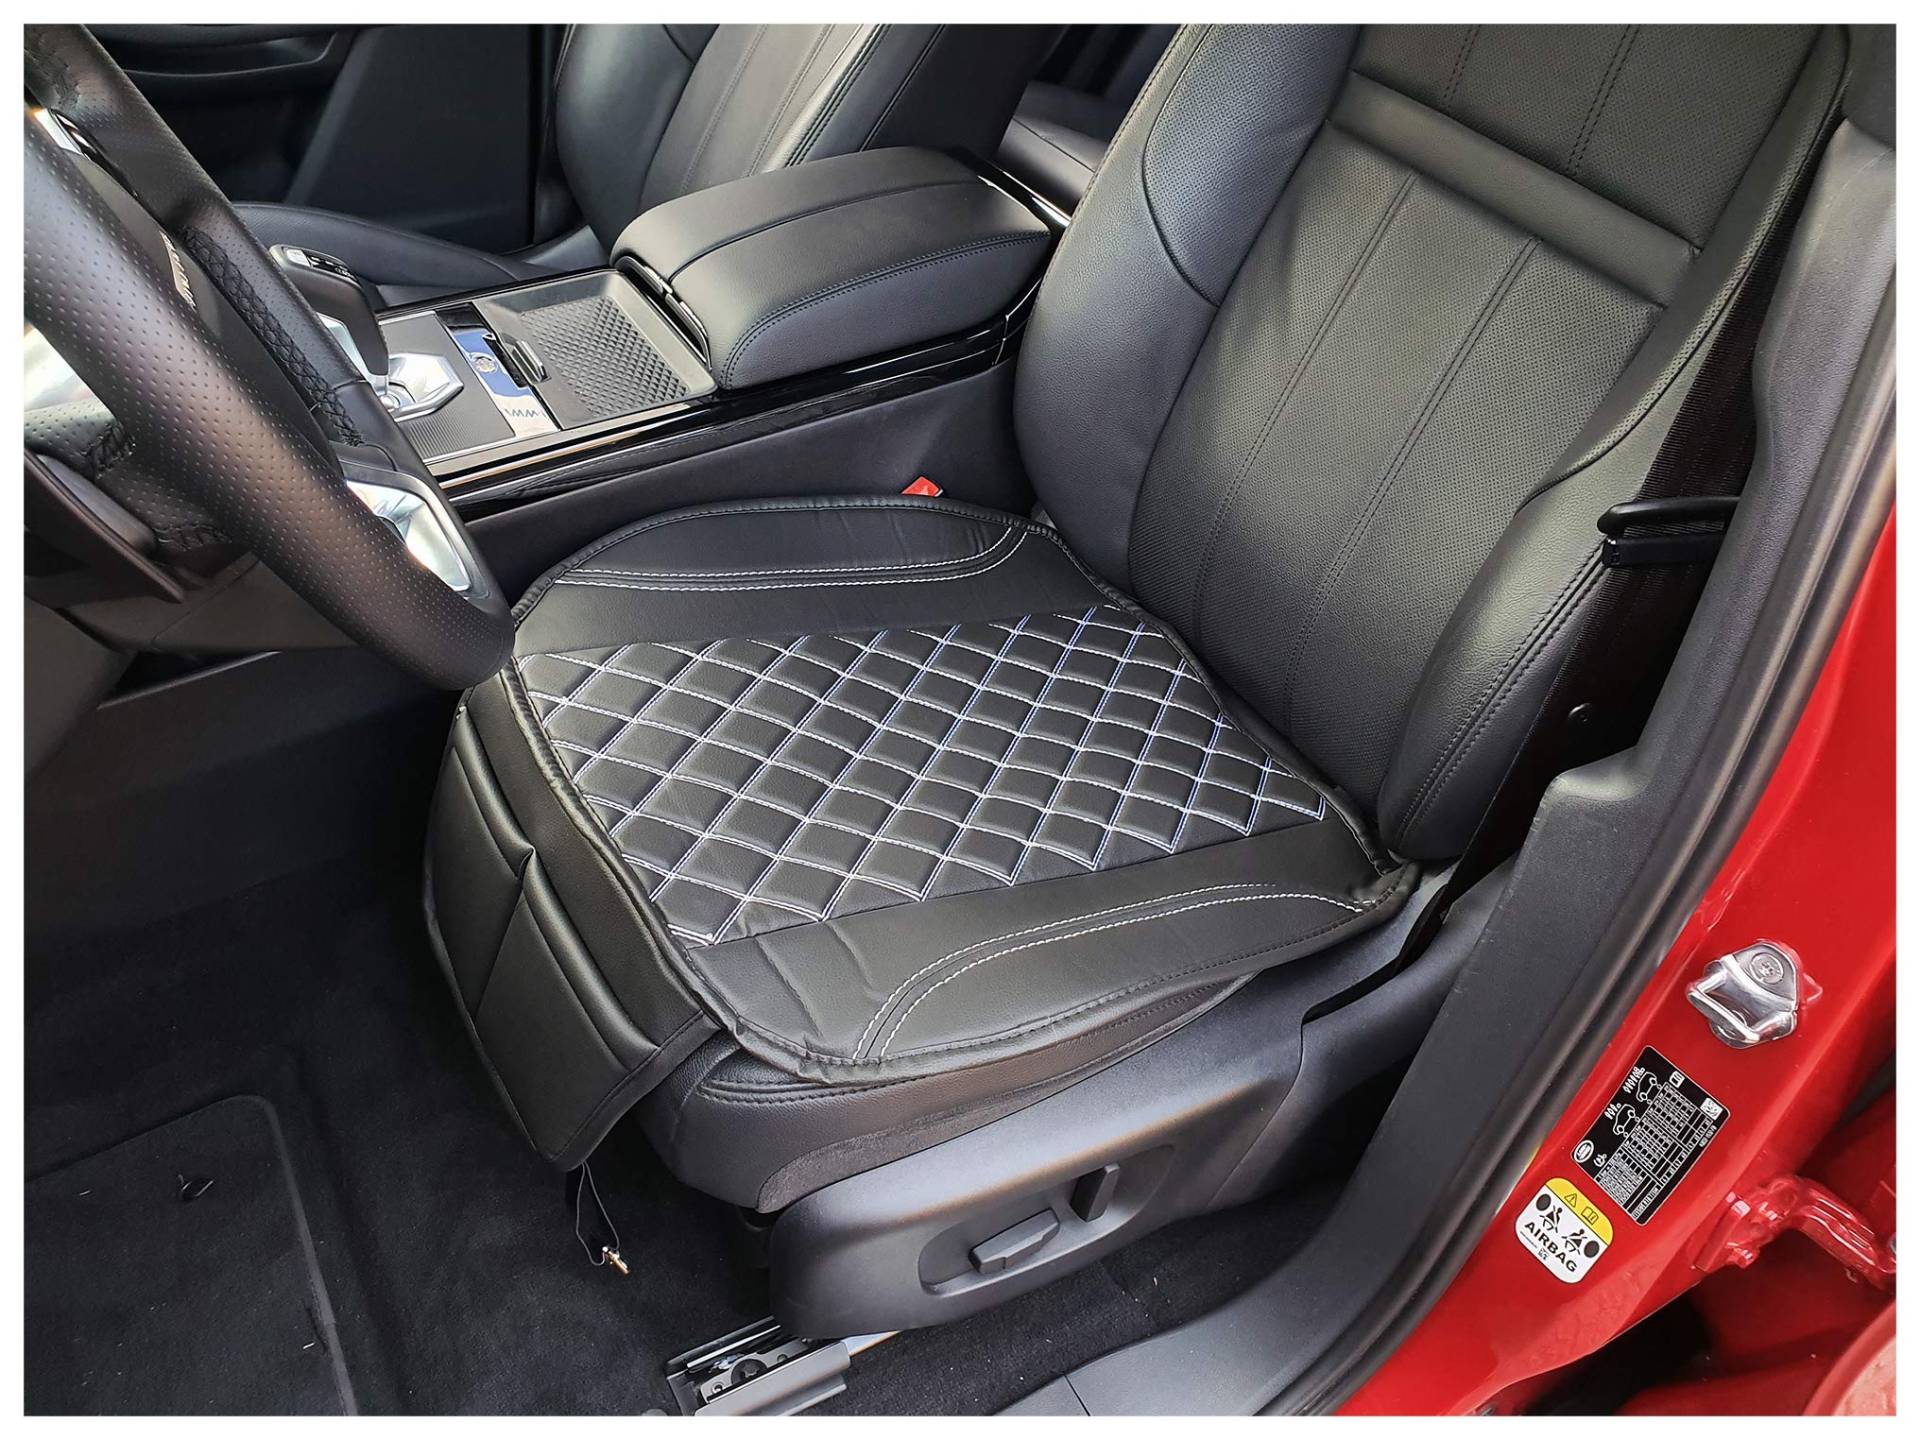 BREMER SITZBEZÜGE Sitzauflage Kunstleder Textilleder kompatibel mit Lexus is 2 Sitzkissen in Kunstleder Schwarz/Weiߟe Naht OT408 von BREMER SITZBEZÜGE